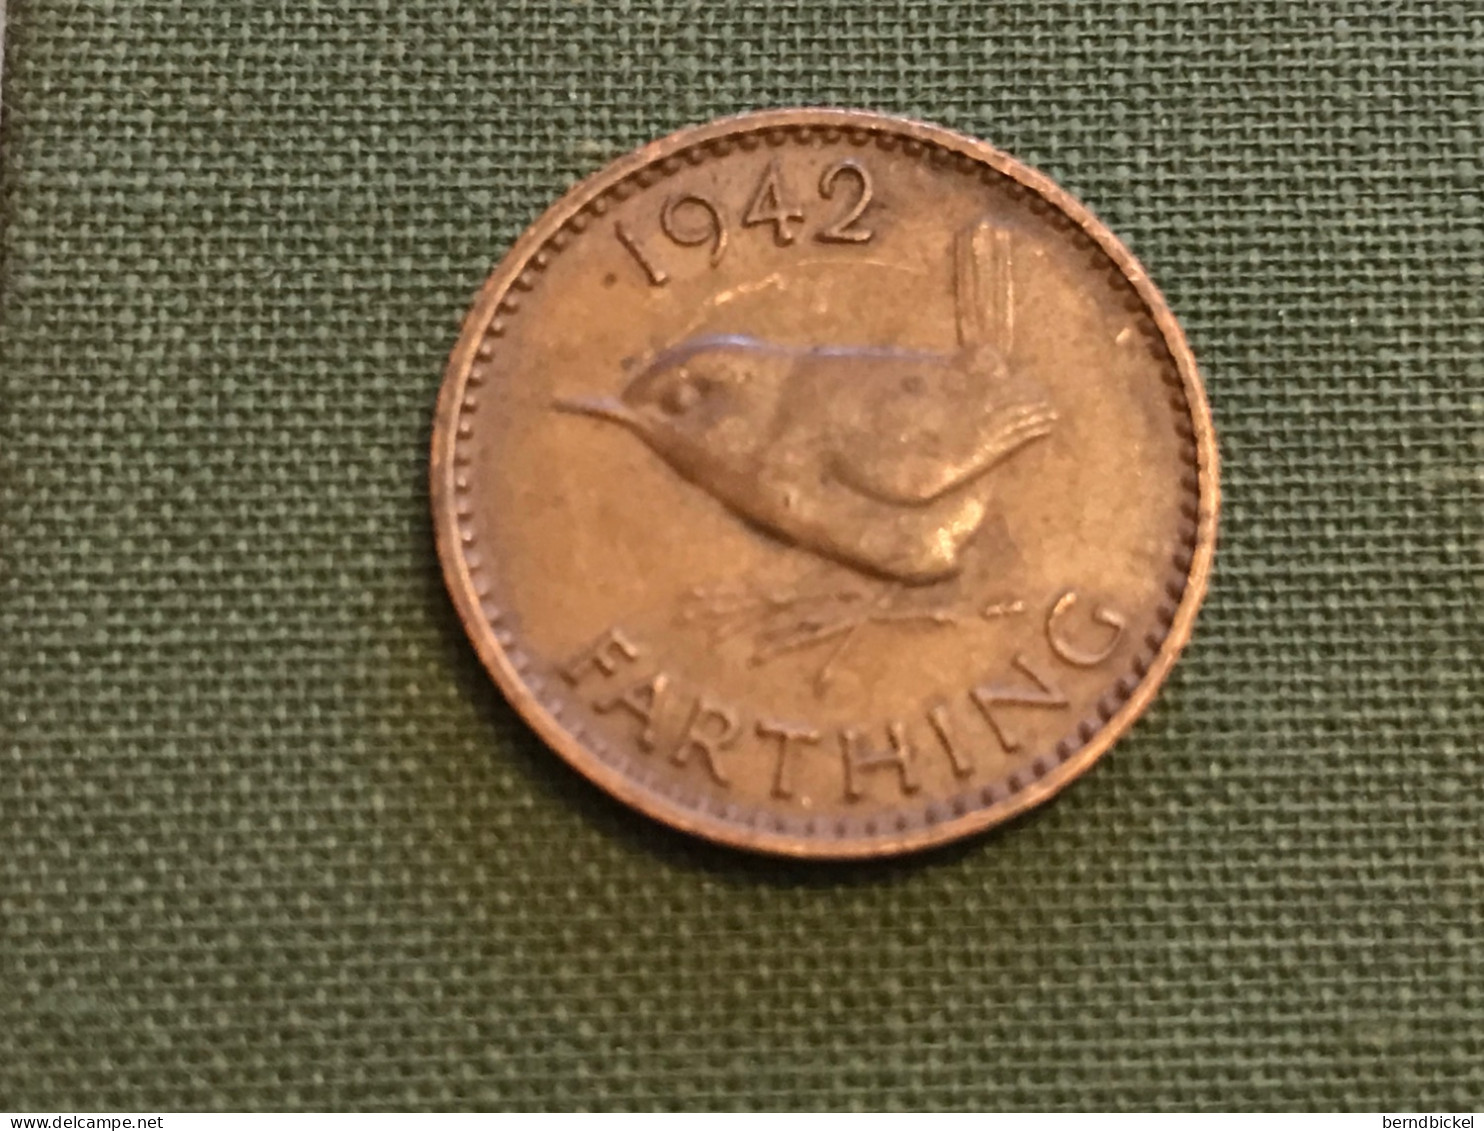 Münze Münzen Umlaufmünze Großbritannien 1 Farthing 1942 - B. 1 Farthing